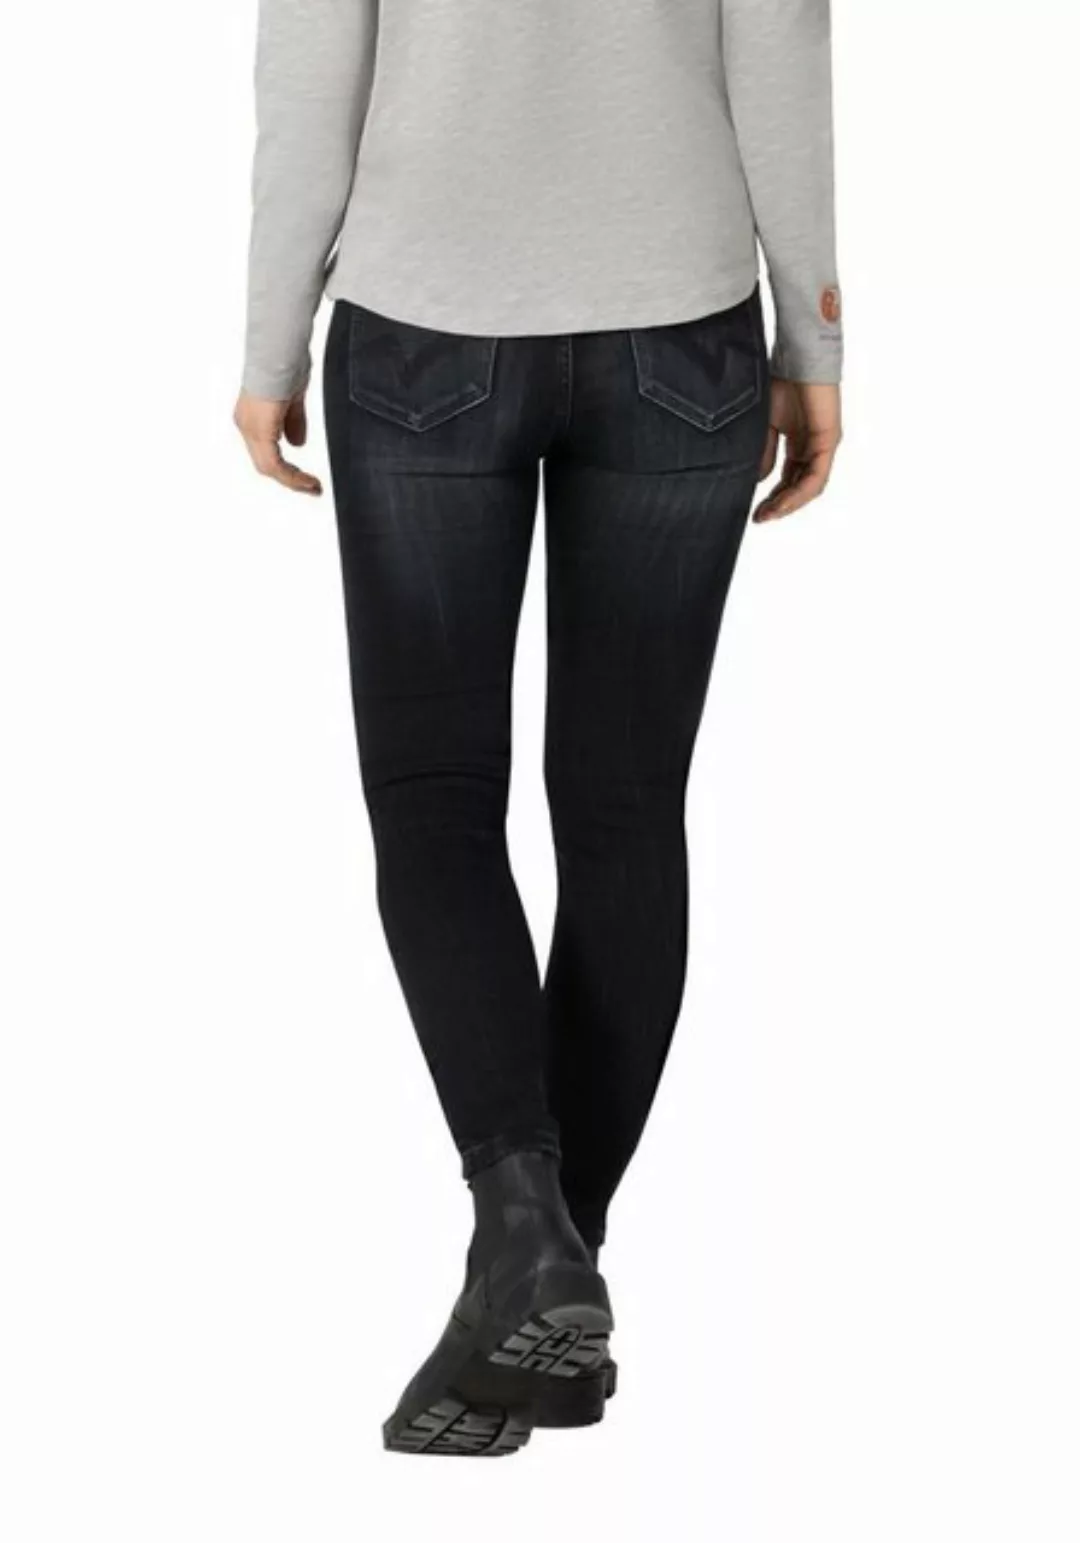 TIMEZONE Damen Jeans TIGHT ALEENATZTZ - Tight Fit - Grau - Gotham Blue Wash günstig online kaufen